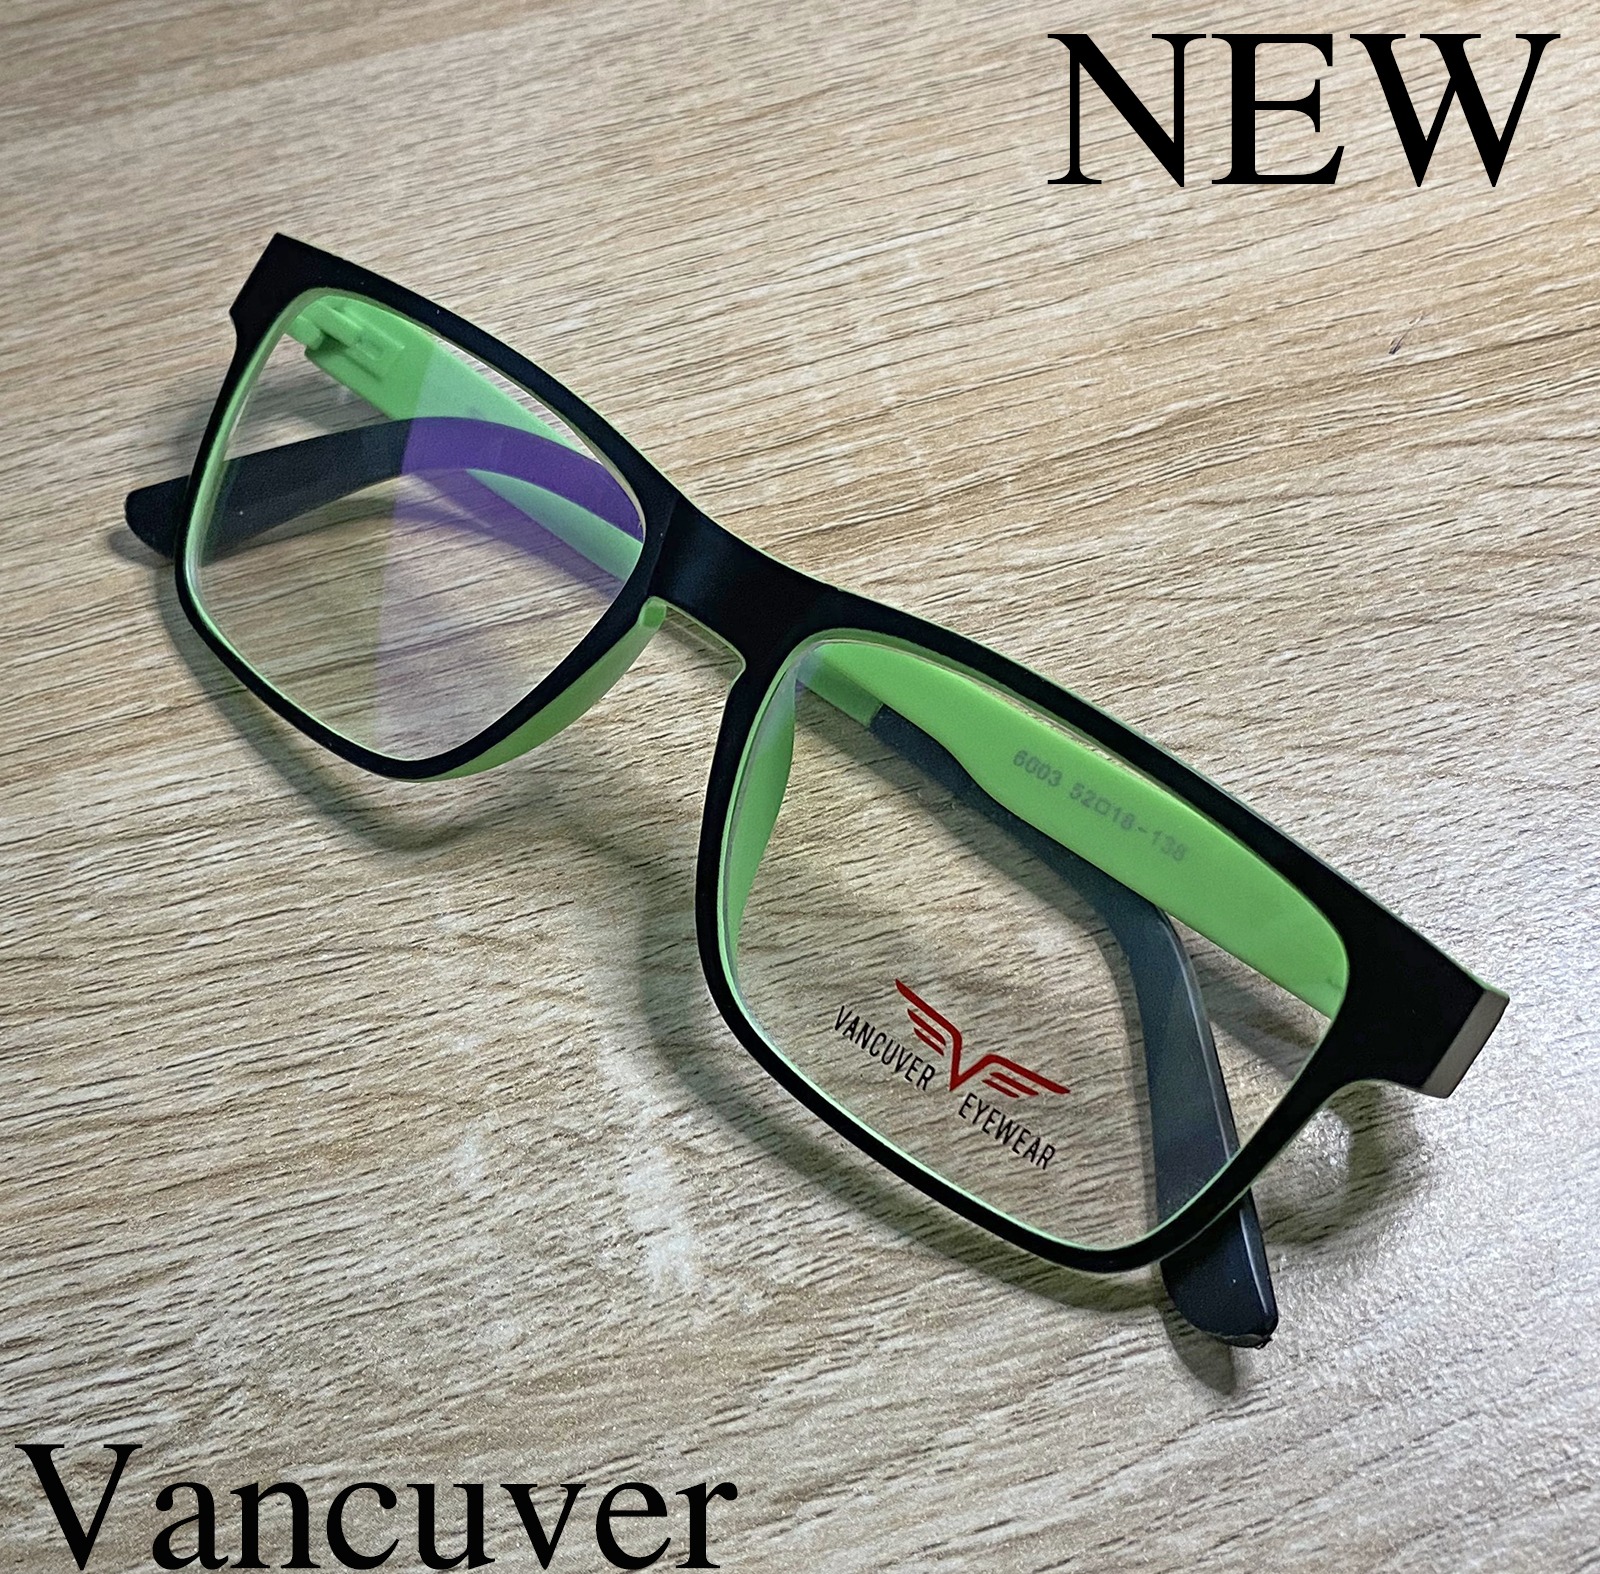 Fashion กรอบแว่นตา รุ่น Vancuver 6003 กรอบเต็ม Rectangle ทรงสี่เหลี่ยมผืนผ้า ขาข้อต่อ วัสดุ พลาสติก พีซี เกรด เอ (สำหรับตัดเลนส์) รับตัดเลนส์ทุกชนิด